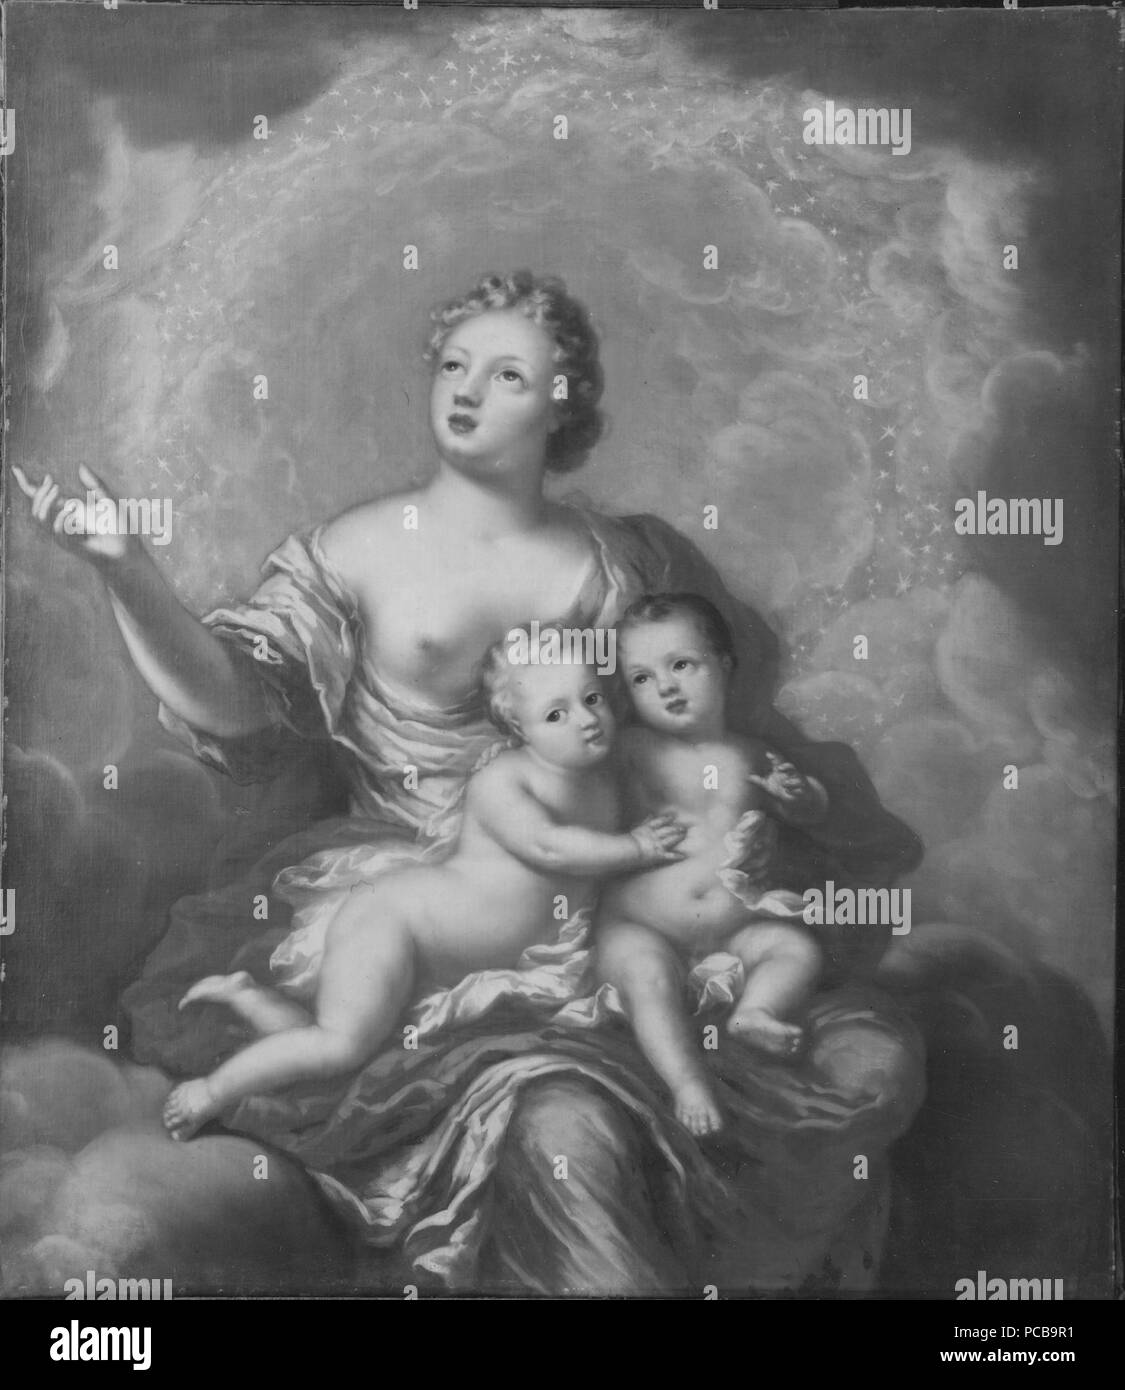 6 Allegori över Gustav, 1683-85, och Ulrik, 1684-85, prinsar av Sverige (David Klöcker Ehrenstrahl) - Nationalmuseum - 14809 Stock Photo